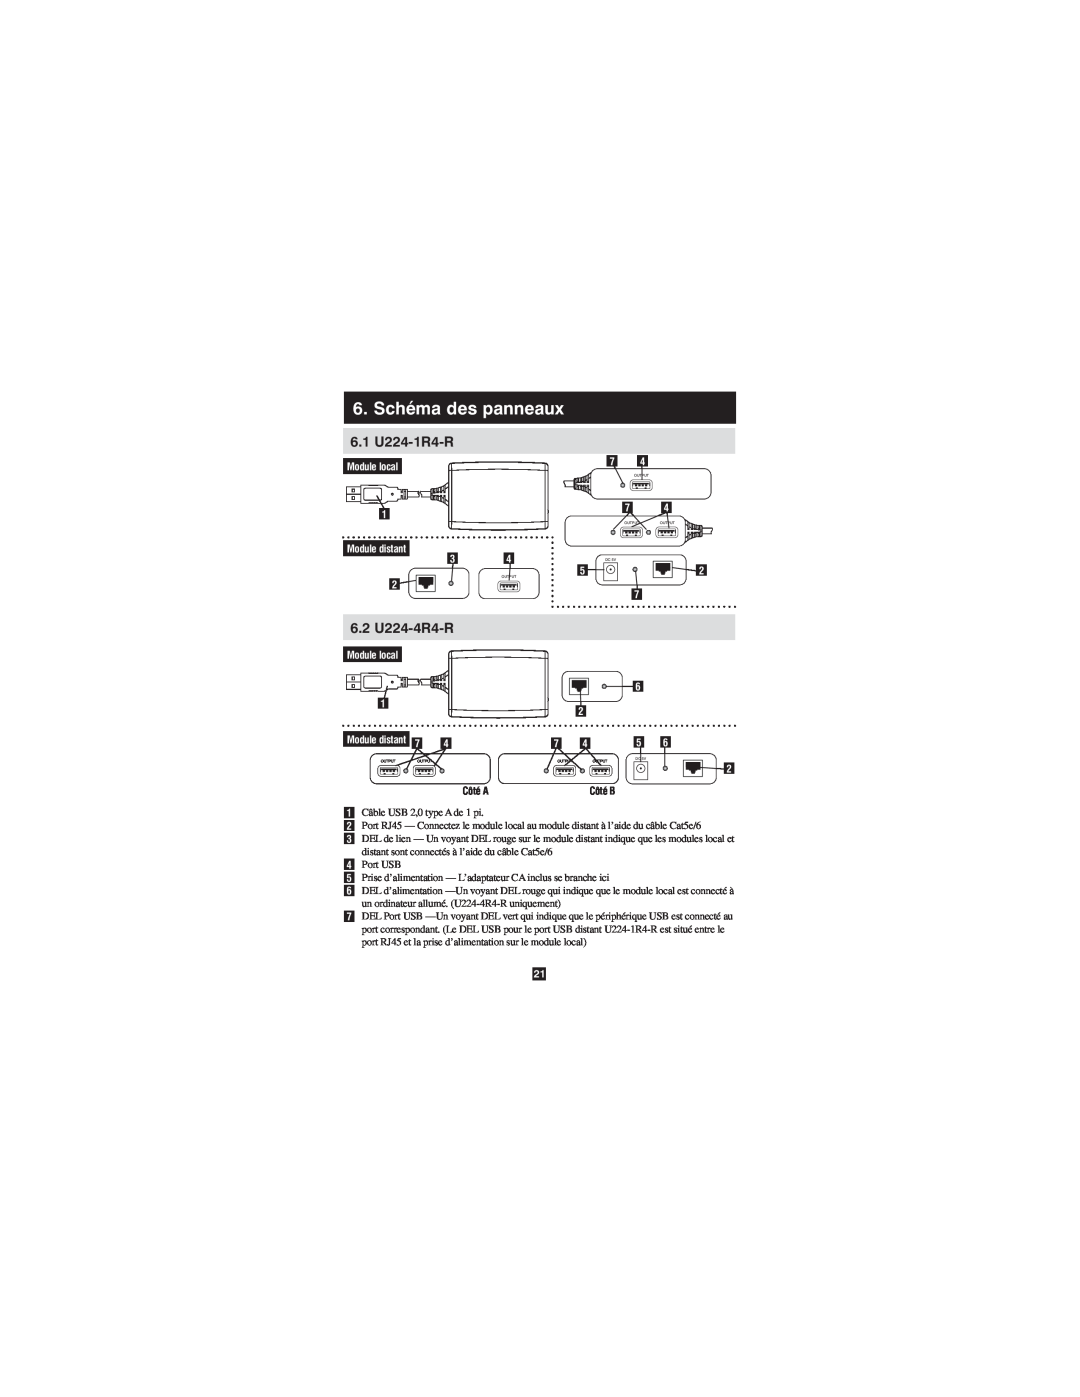 Tripp Lite owner manual Schéma des panneaux, 6.1 U224-1R4-R, 6.2 U224-4R4-R, Module local Module distant, Côté A 